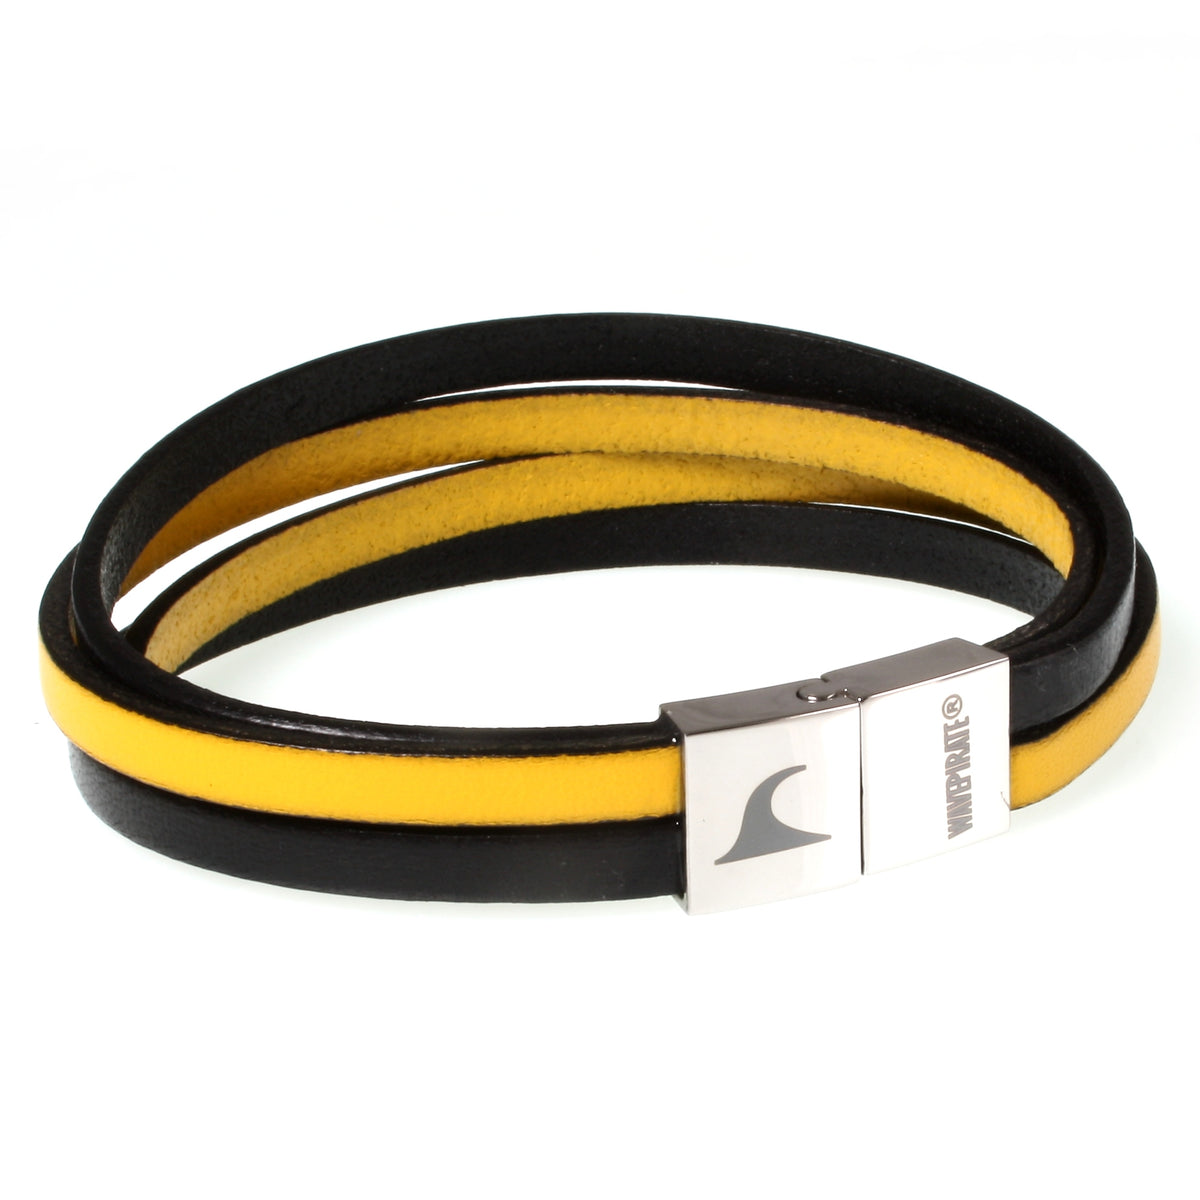 Herren-Leder-Armband-Twist-schwarz-gelb-flach-Edelstahlverschluss-vorn-wavepirate-shop